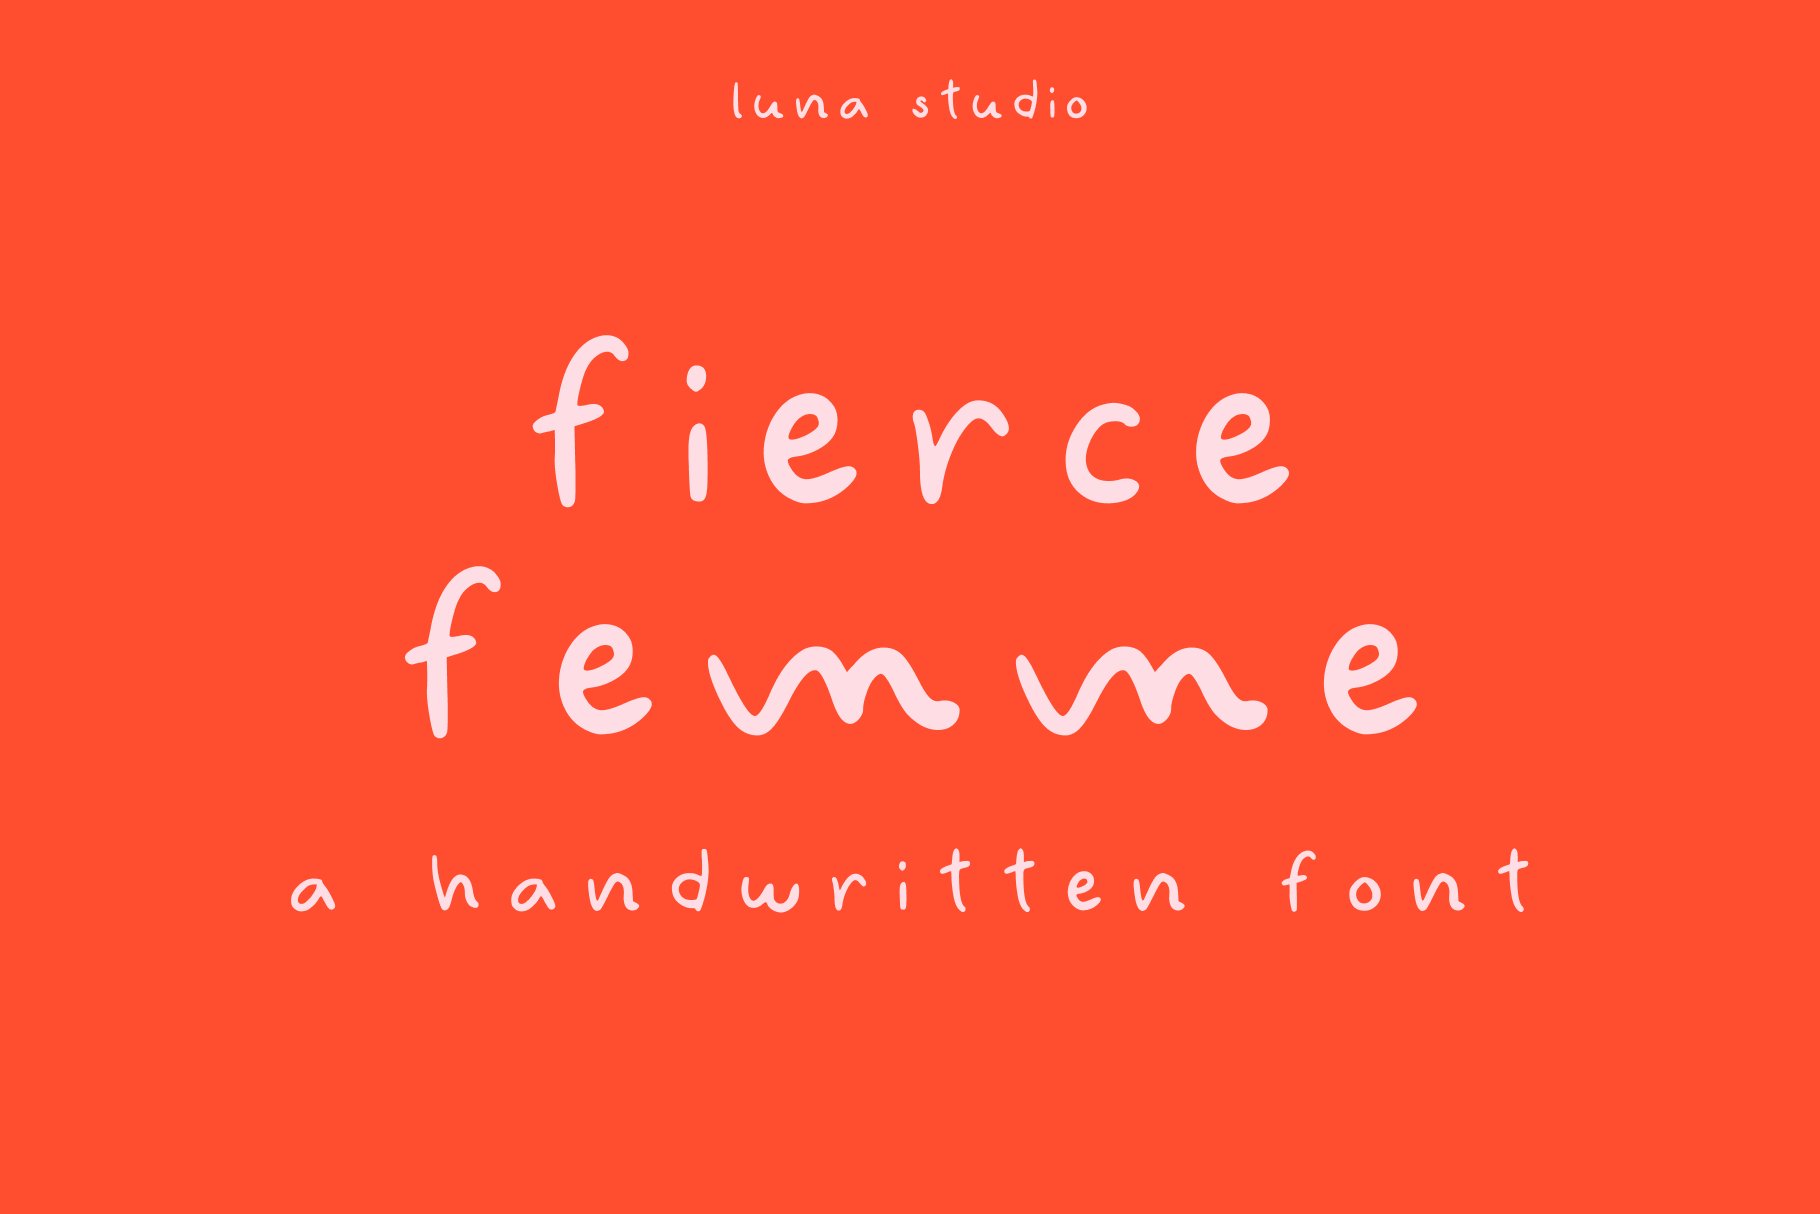 Fierce Femme | Handwritten Font cover image.